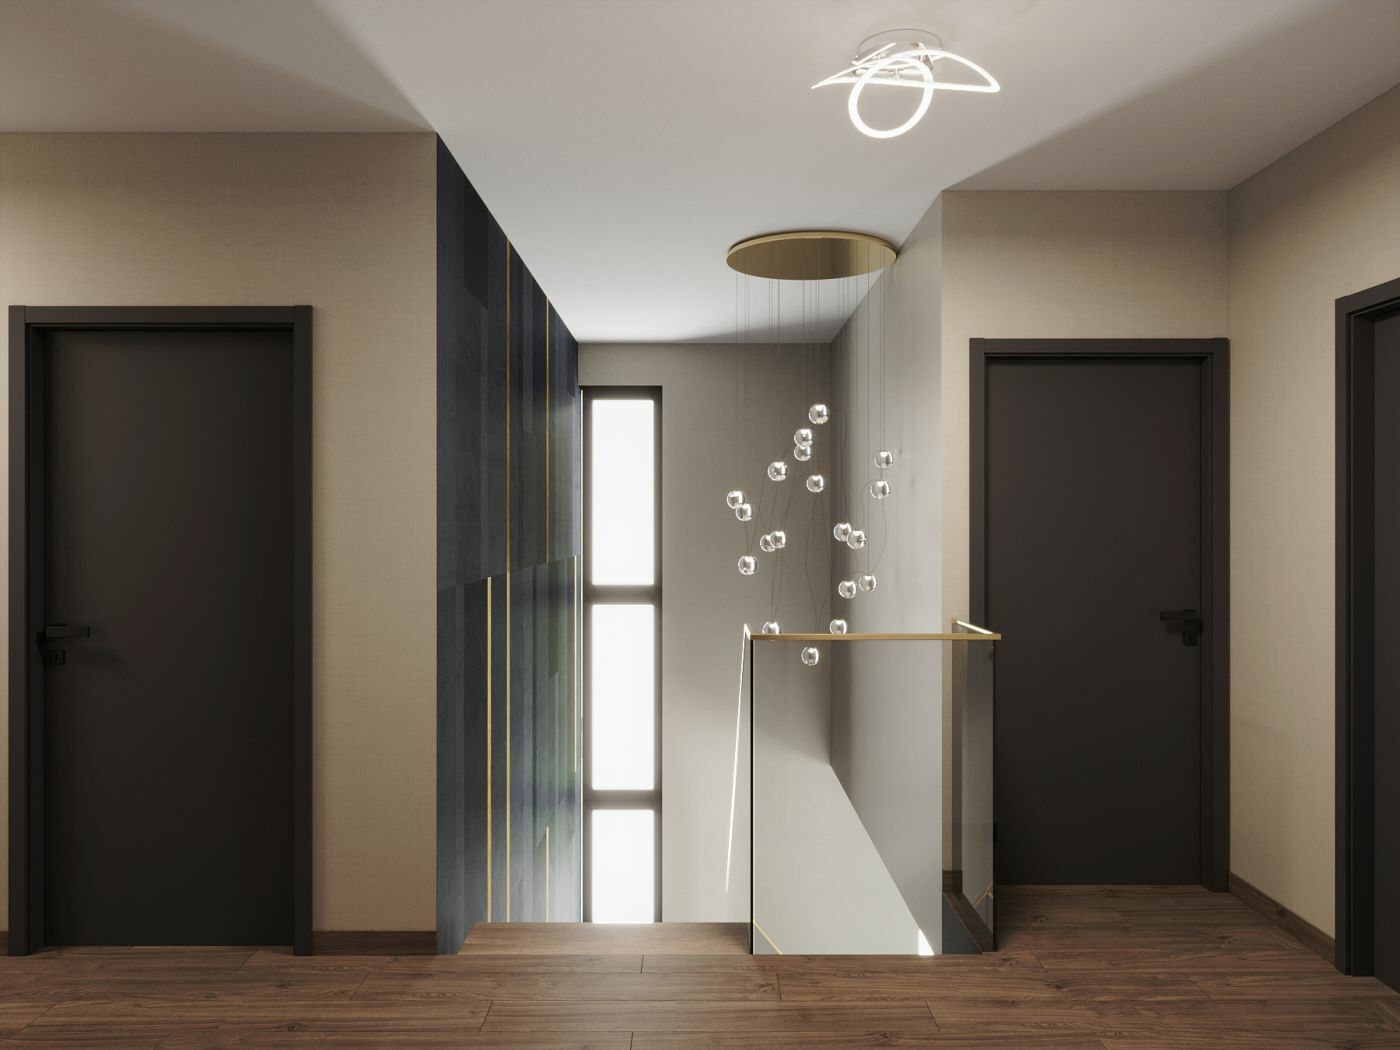 Design lámpák világítják meg az emeleti közlekedőt